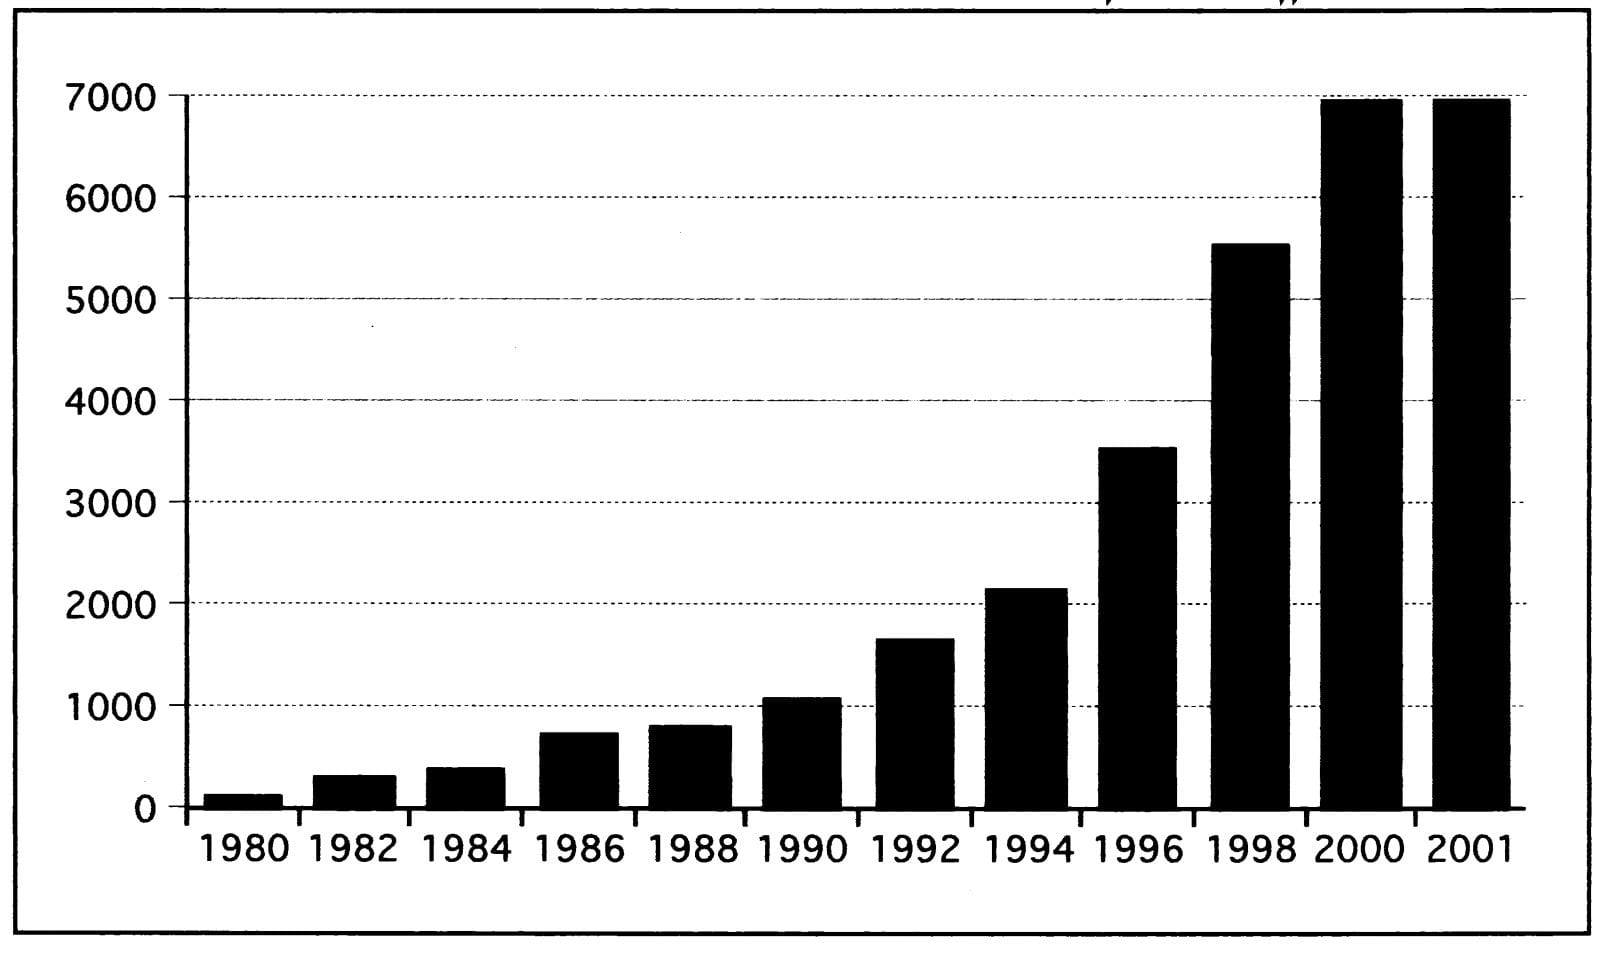 התפתחות היקף נכסי קרנות הנאמנות בארה"ב מאז 1980 (מיליארדי דולר)